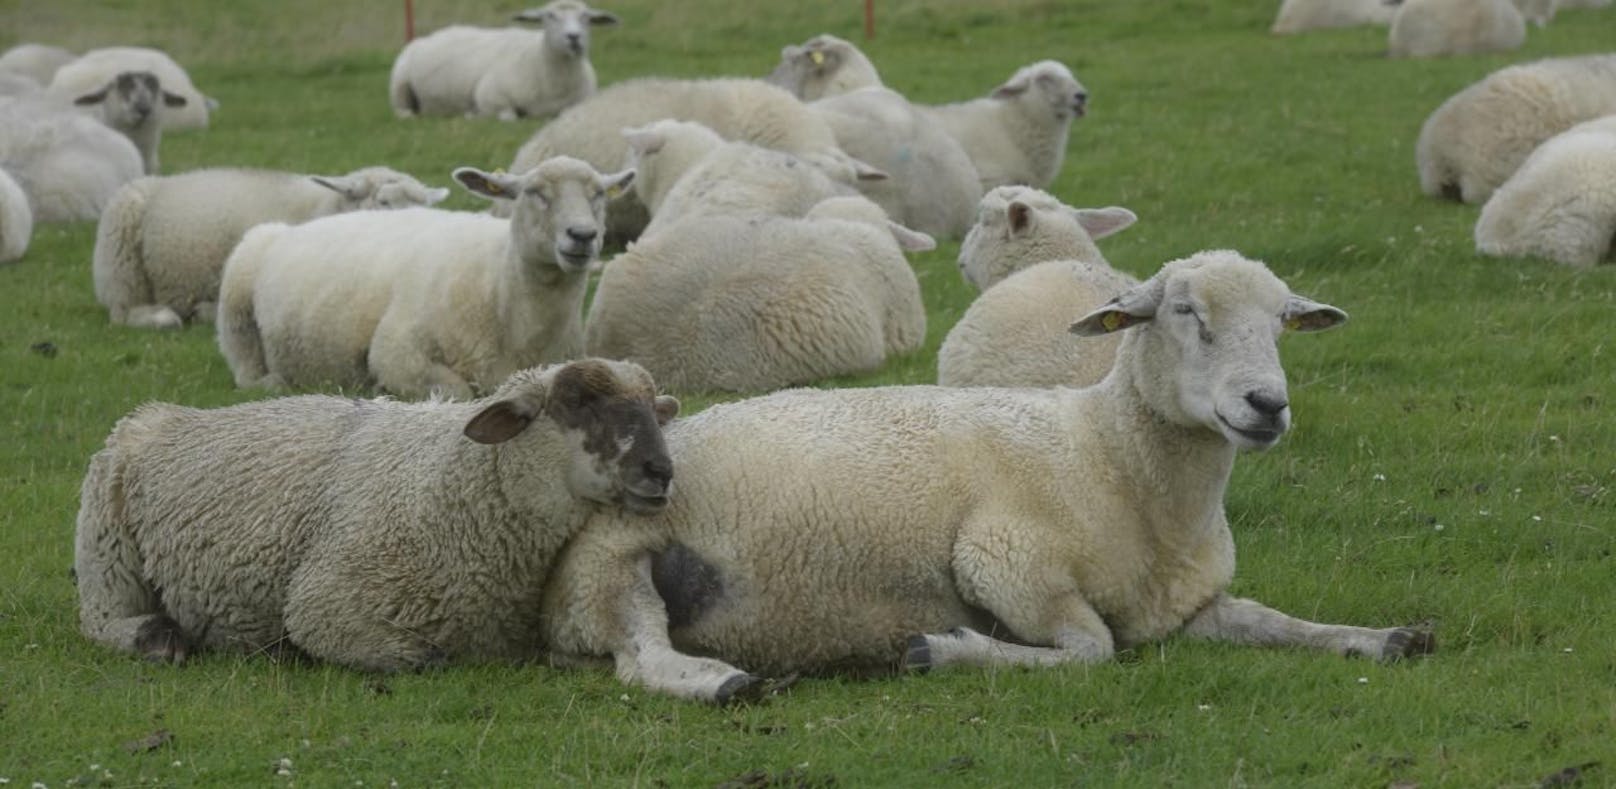 Bauern sollen Schafe nicht an Moslems verkaufen